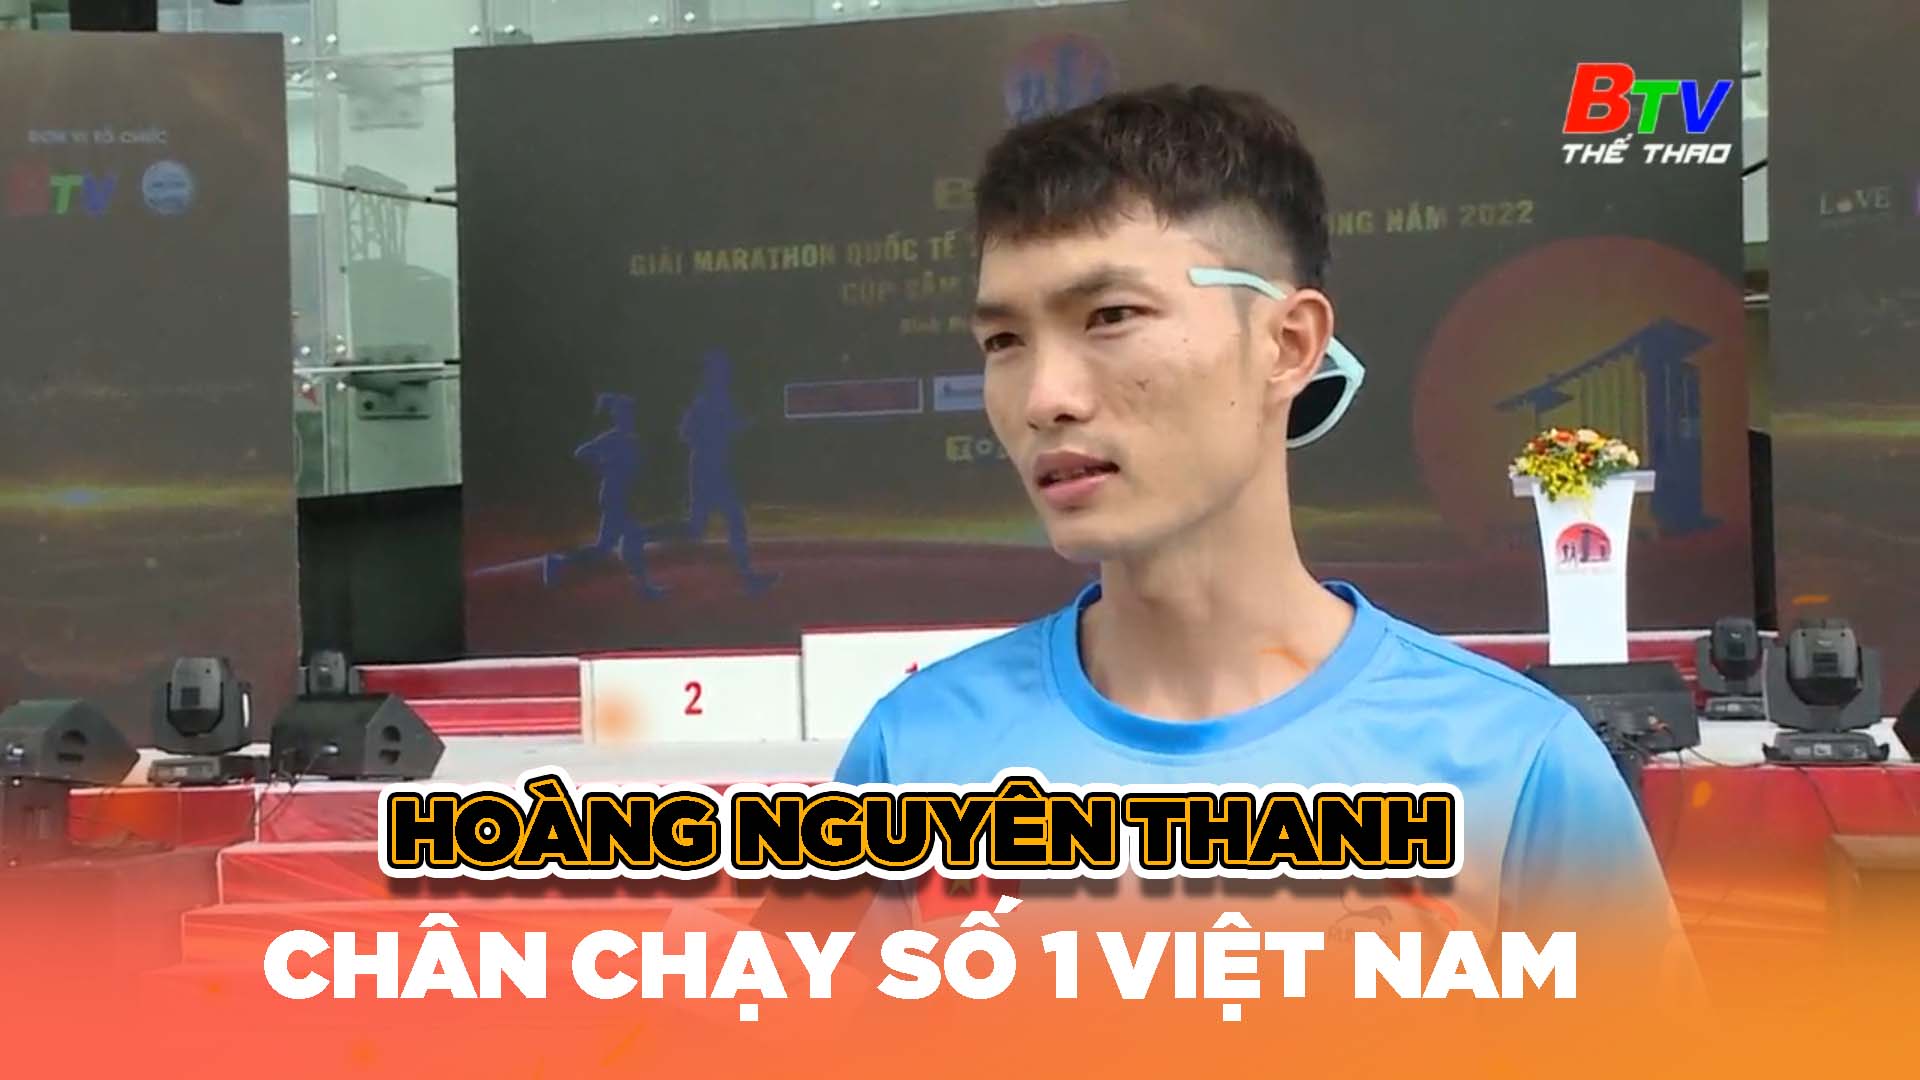 Hoàng Nguyên Thanh – Chân chạy số 1 Việt Nam